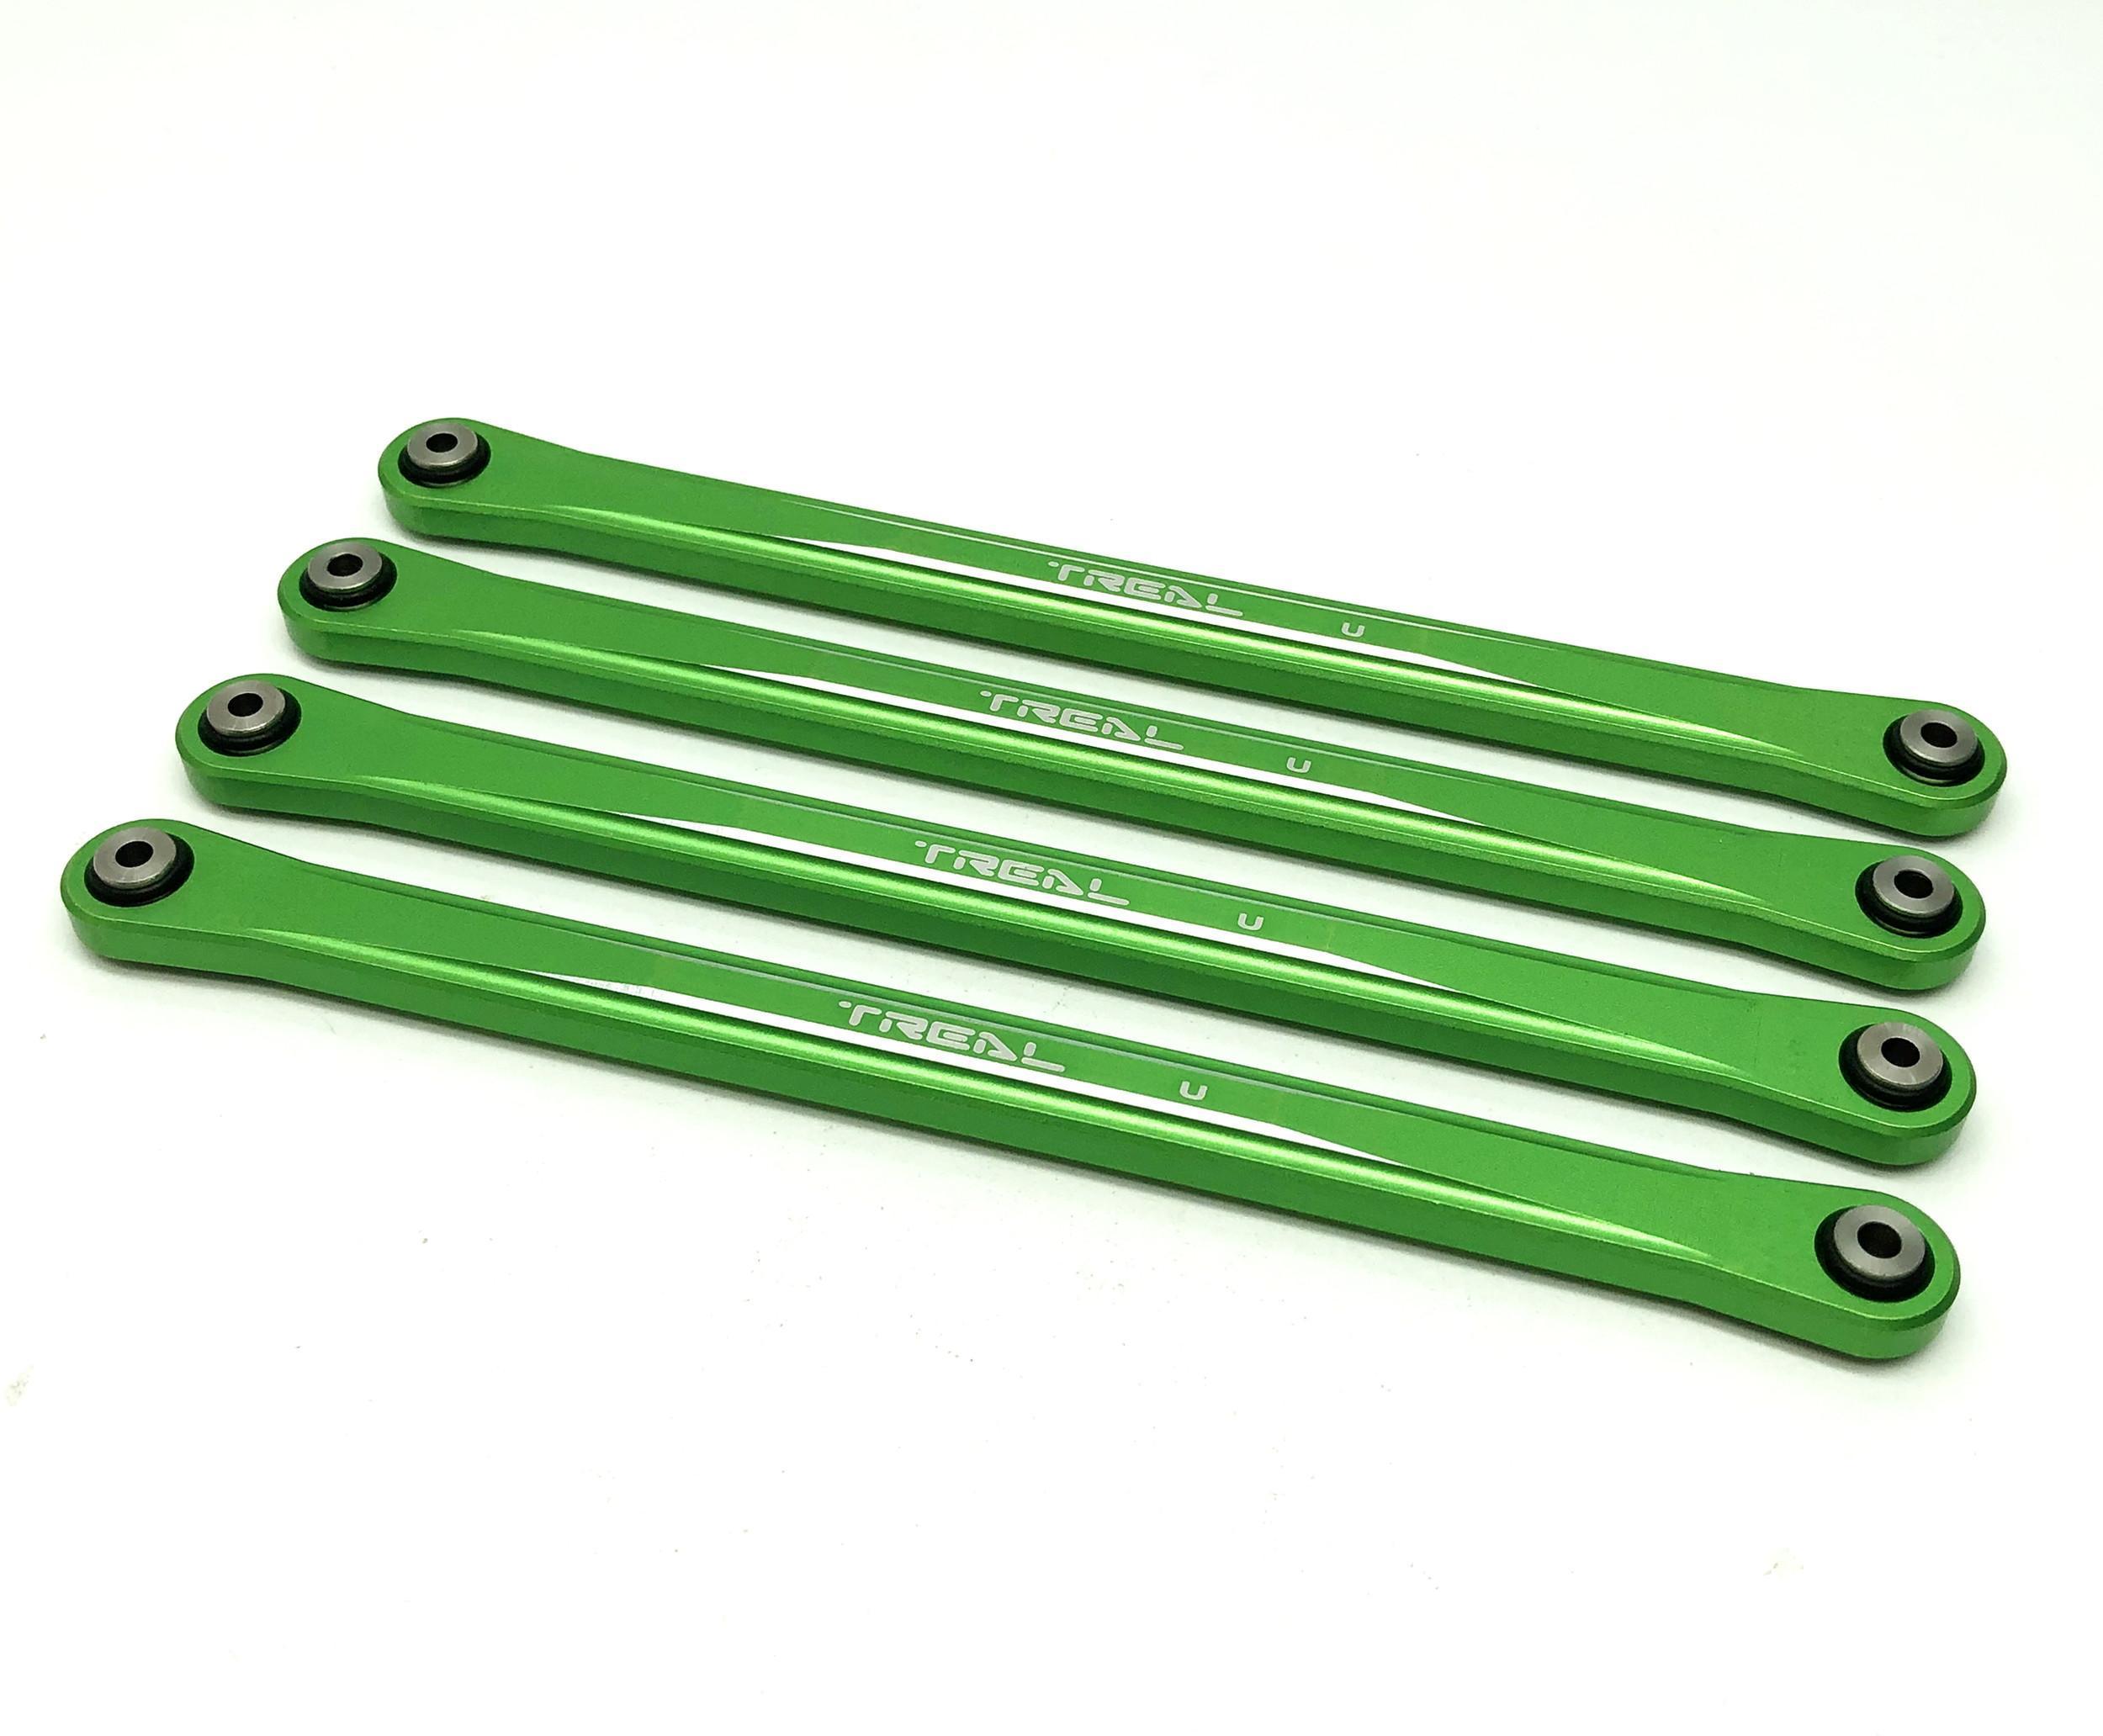 Treal Aluminum 7075 Upper Link Bars (4) pcs Set for Losi LMT (Green) ...